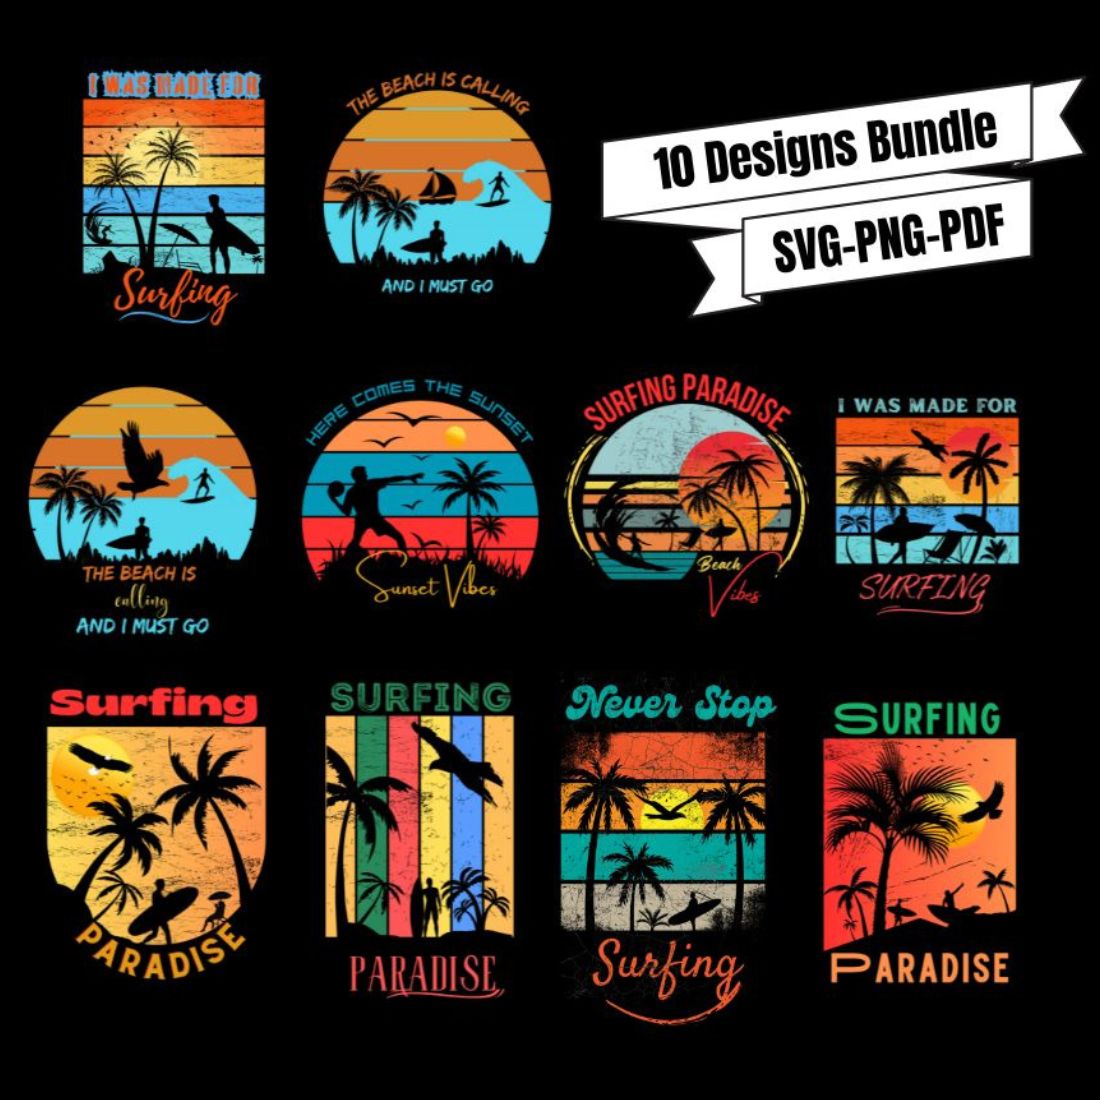 Surfing Paradise Design Bundle preview image.